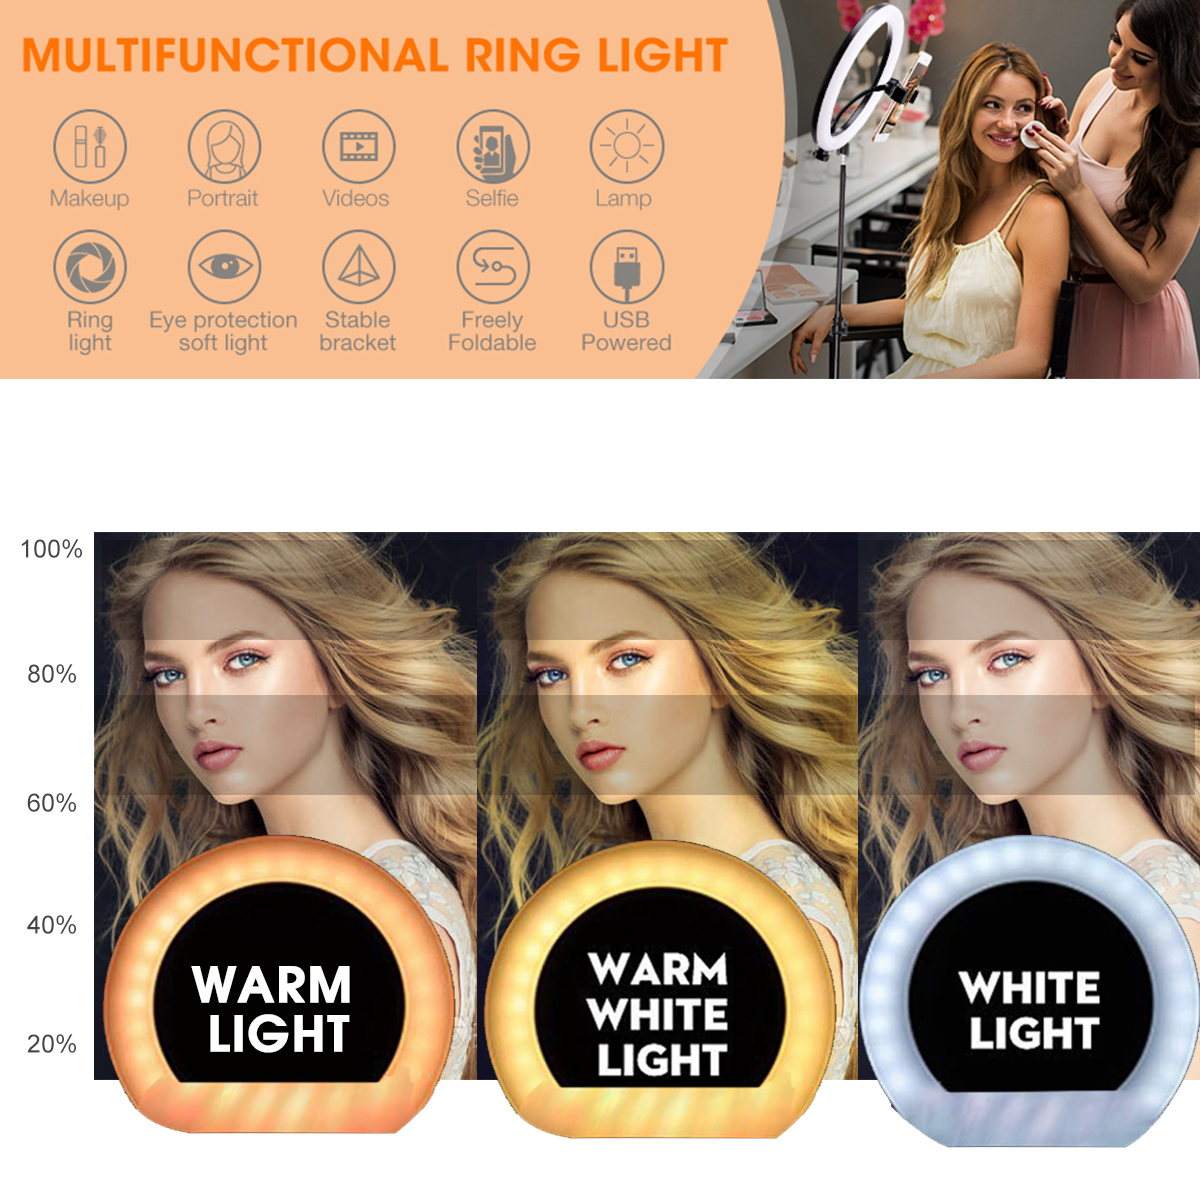 LED-Ring-Light-Dimmable-Selfie-Lamp-Tripod-Stand-Phone-Holder-USB-Powered-for-Vlog-YouTube-Tiktok-VK-1679905-2